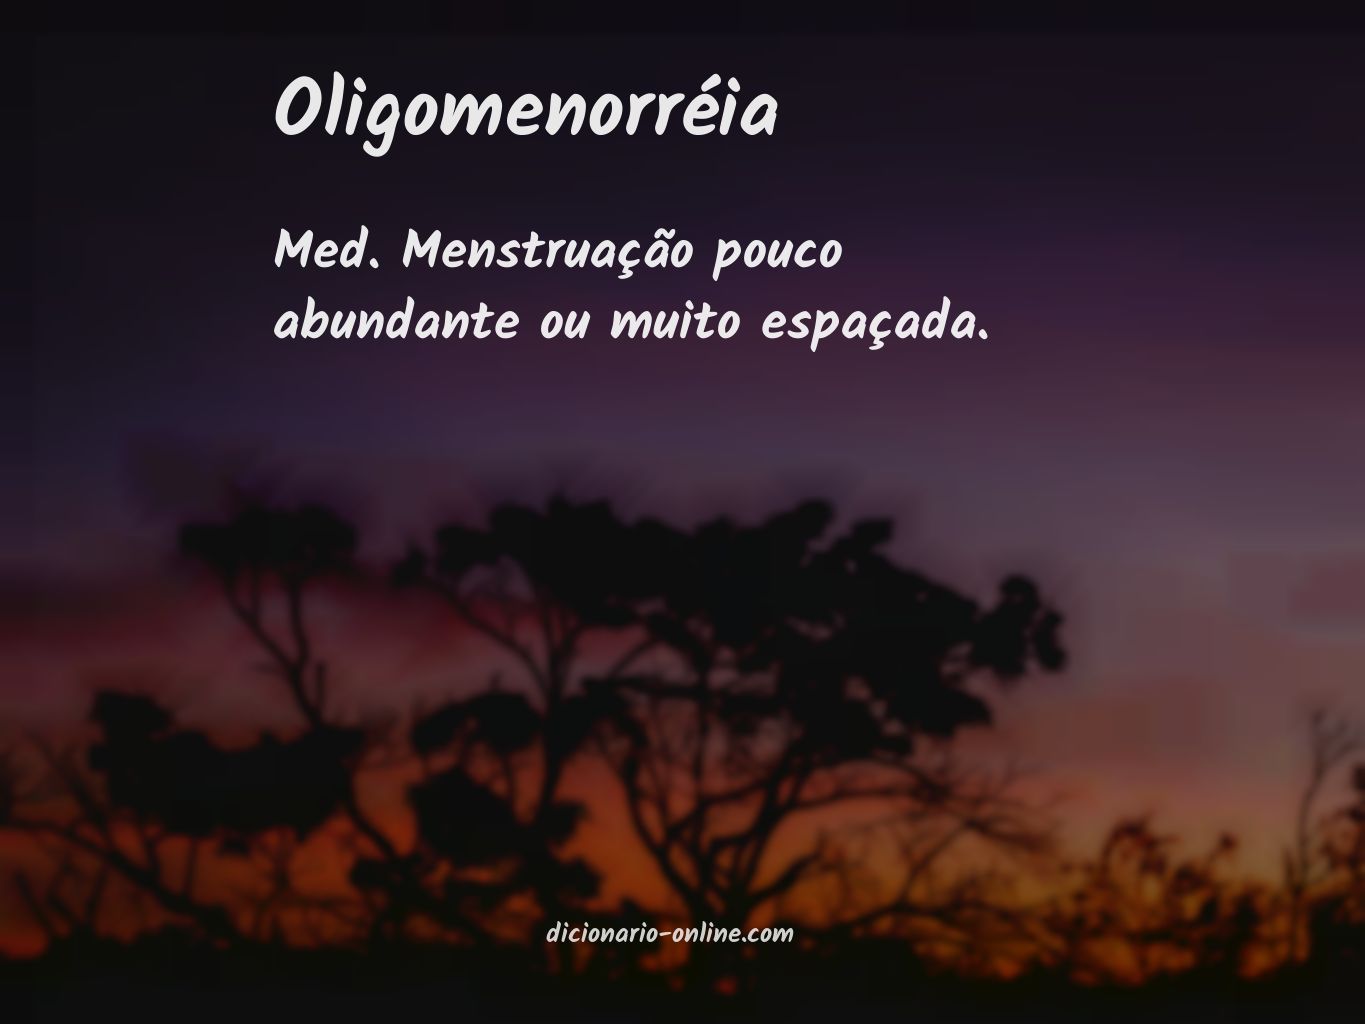 Significado de oligomenorréia